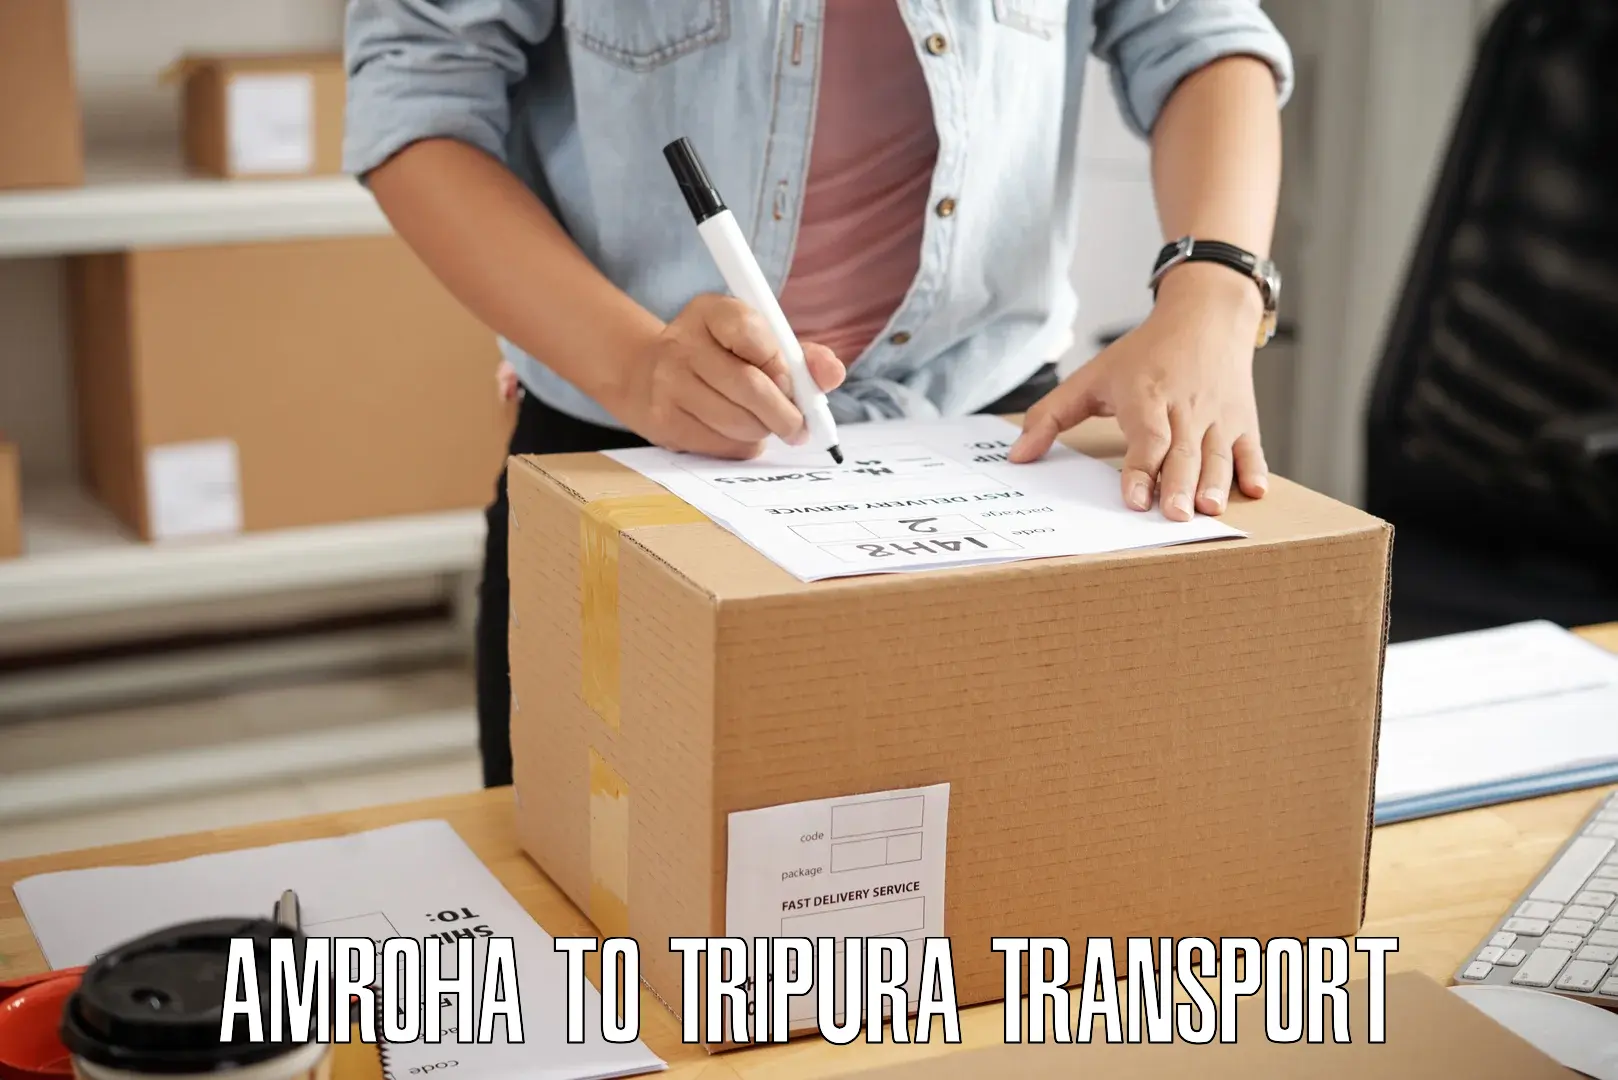 Cargo transportation services Amroha to IIIT Agartala